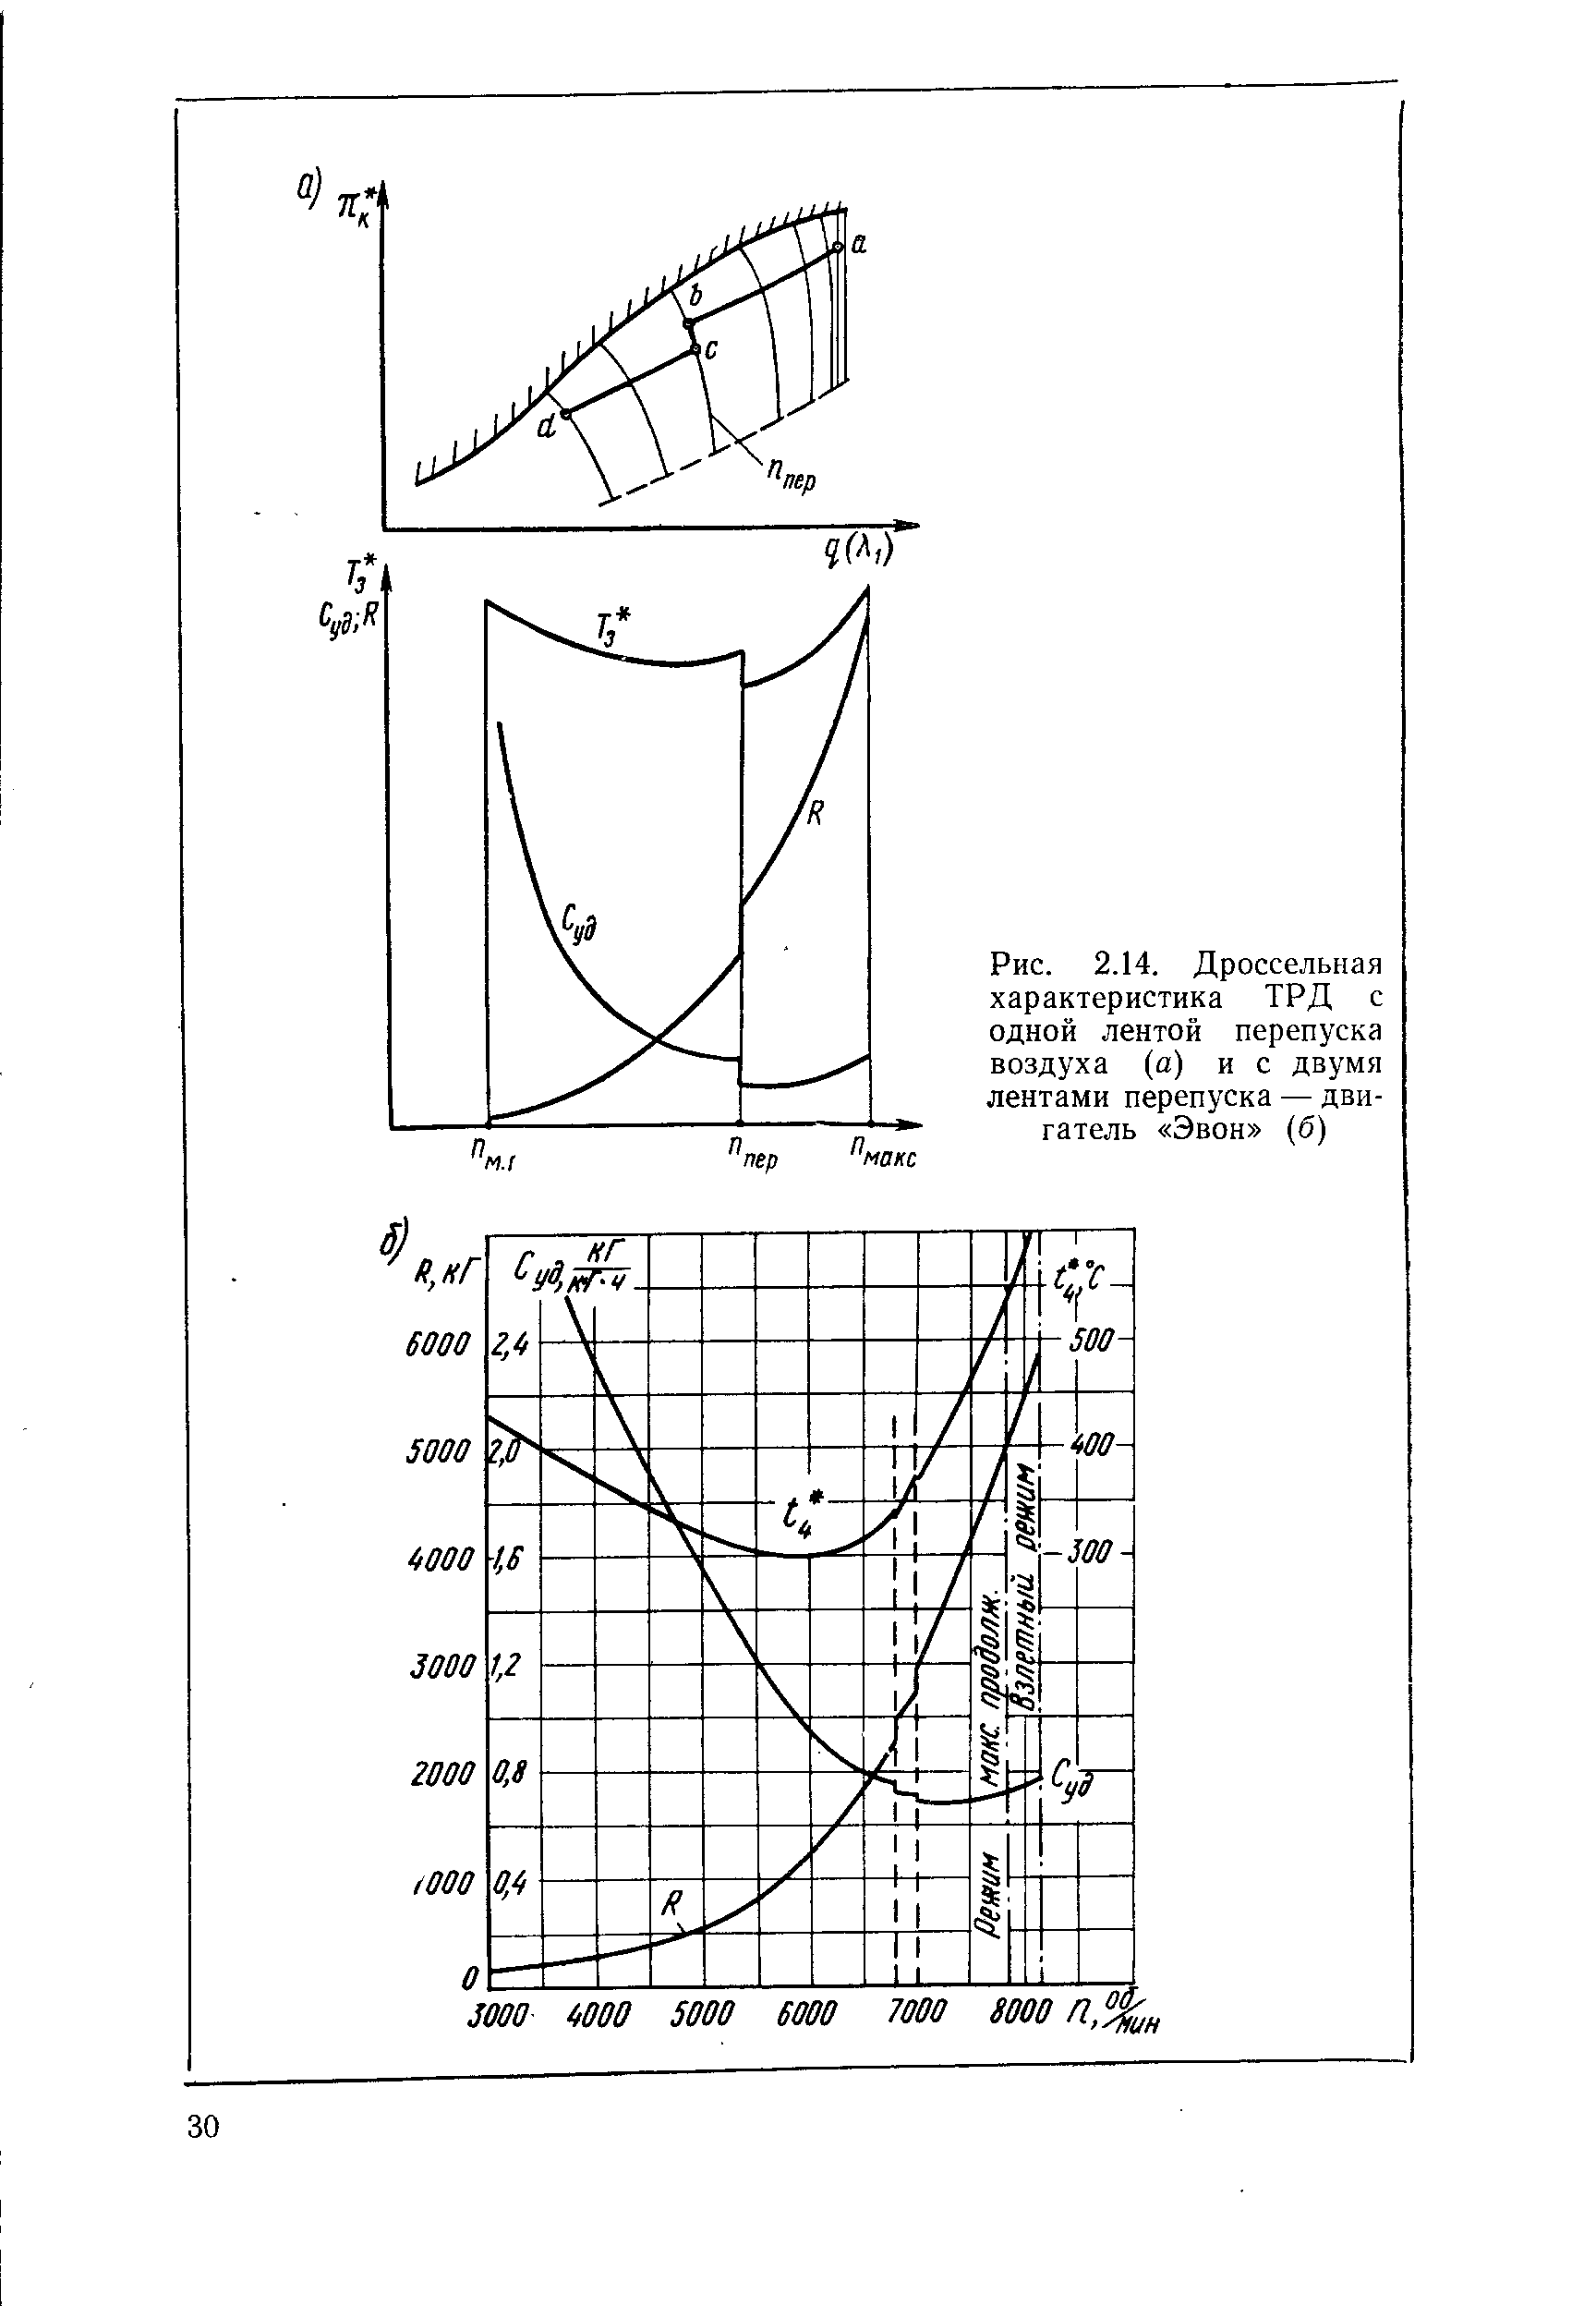 Рис. 2.14. Дроссельная характеристика ТРД с одной лентой перепуска воздуха (а) и с двумя лентами перепуска — двигатель Эвон (б)
